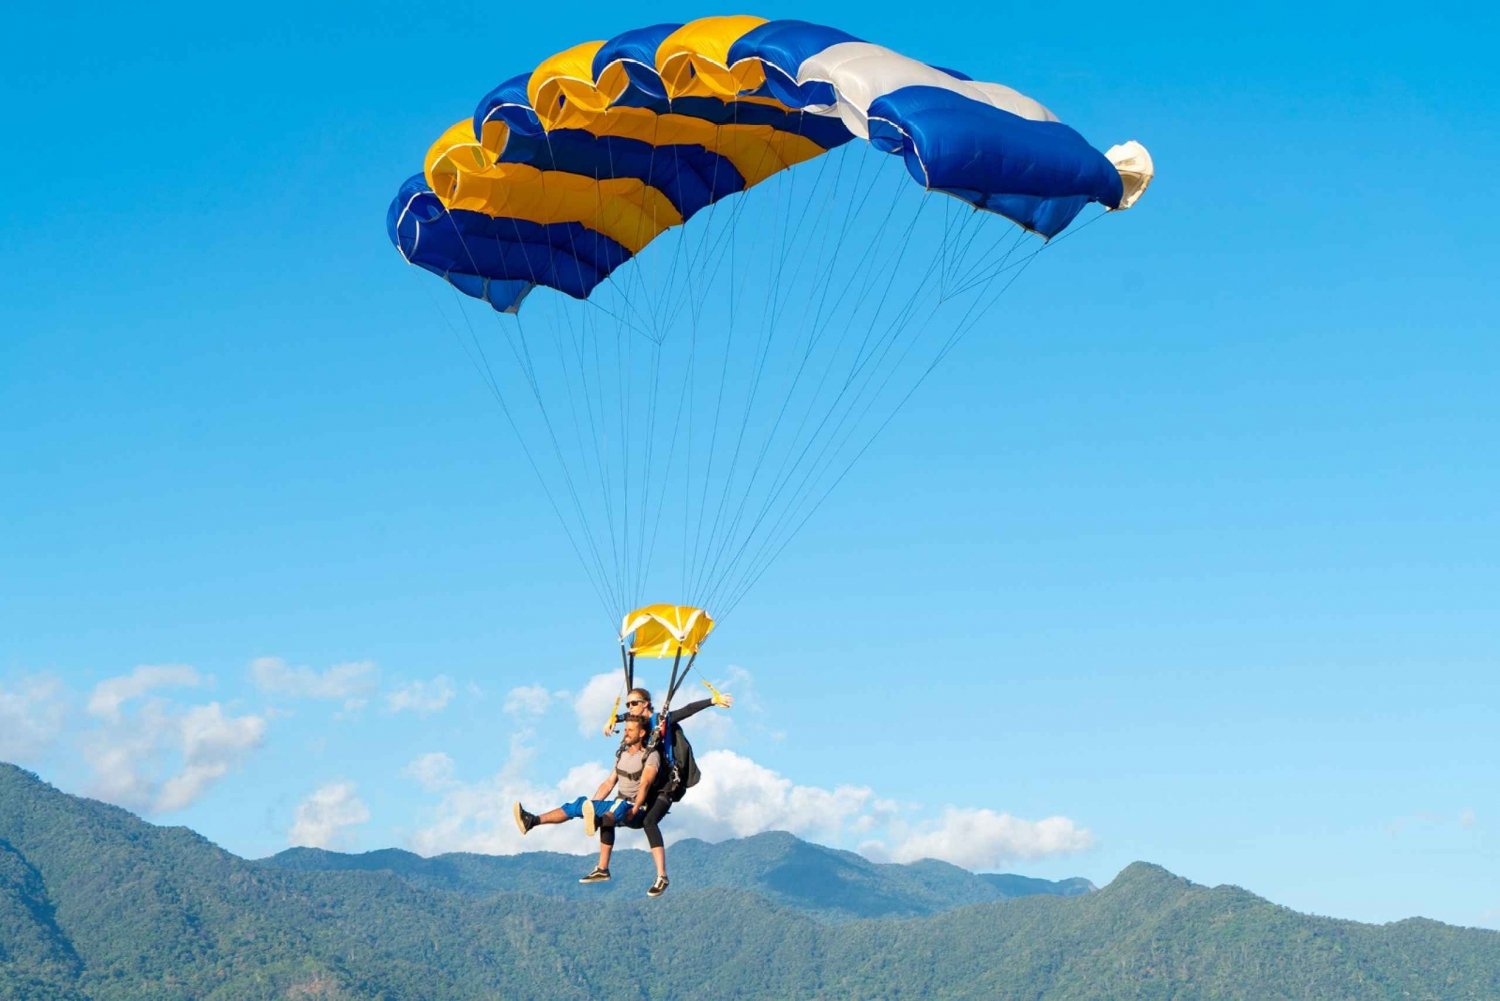 Cairns : Saut en parachute en tandem à 15 000 pieds d'altitude